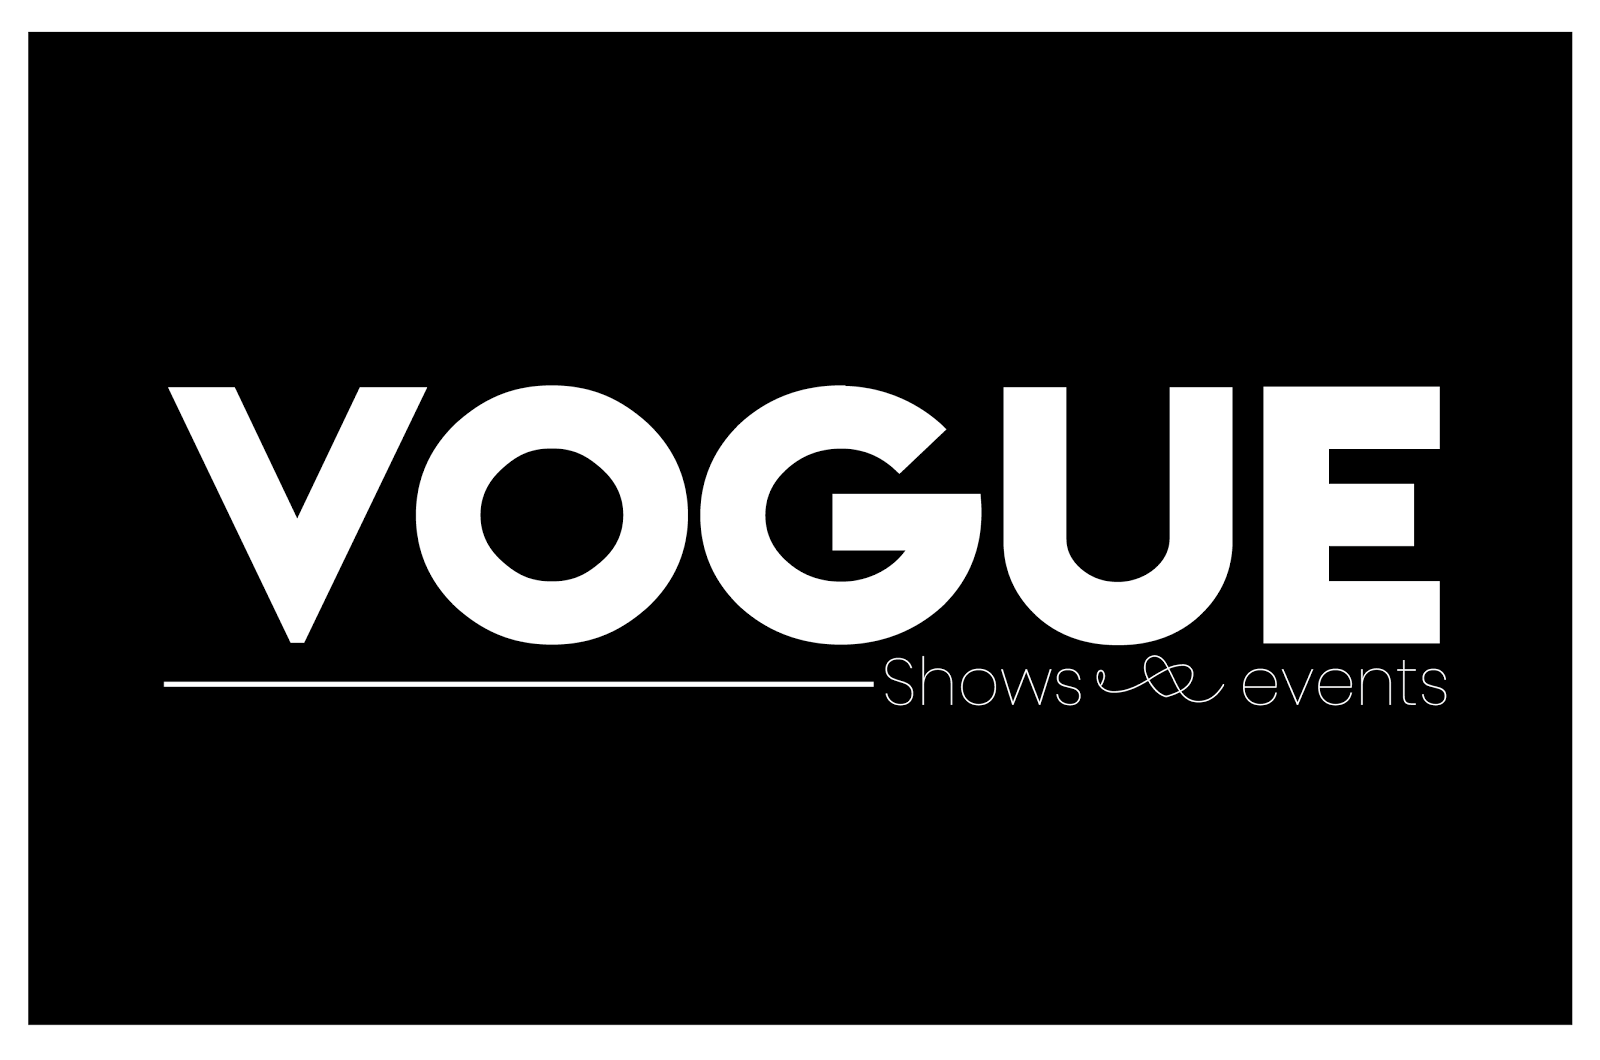 Vogue Shows &amp; Events